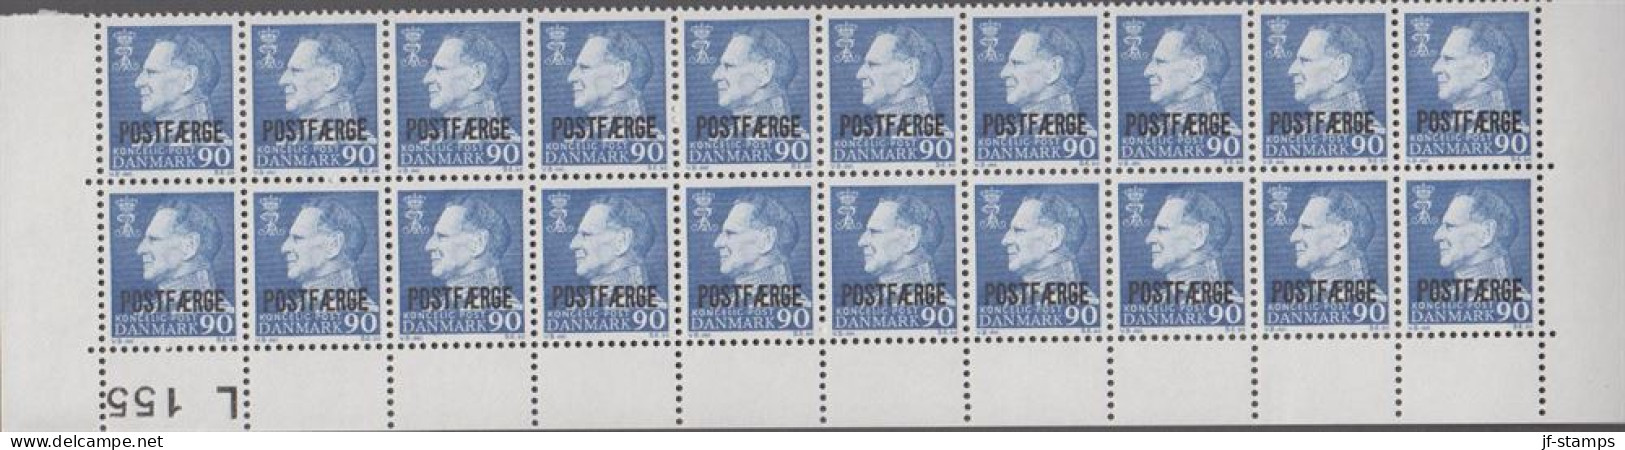 1970. Postfærge. 90 øre Frederik Overprinted POSTFÆRGE In 20-block With Lower Margin L 155. ... (Michel PF43) - JF538518 - Paketmarken